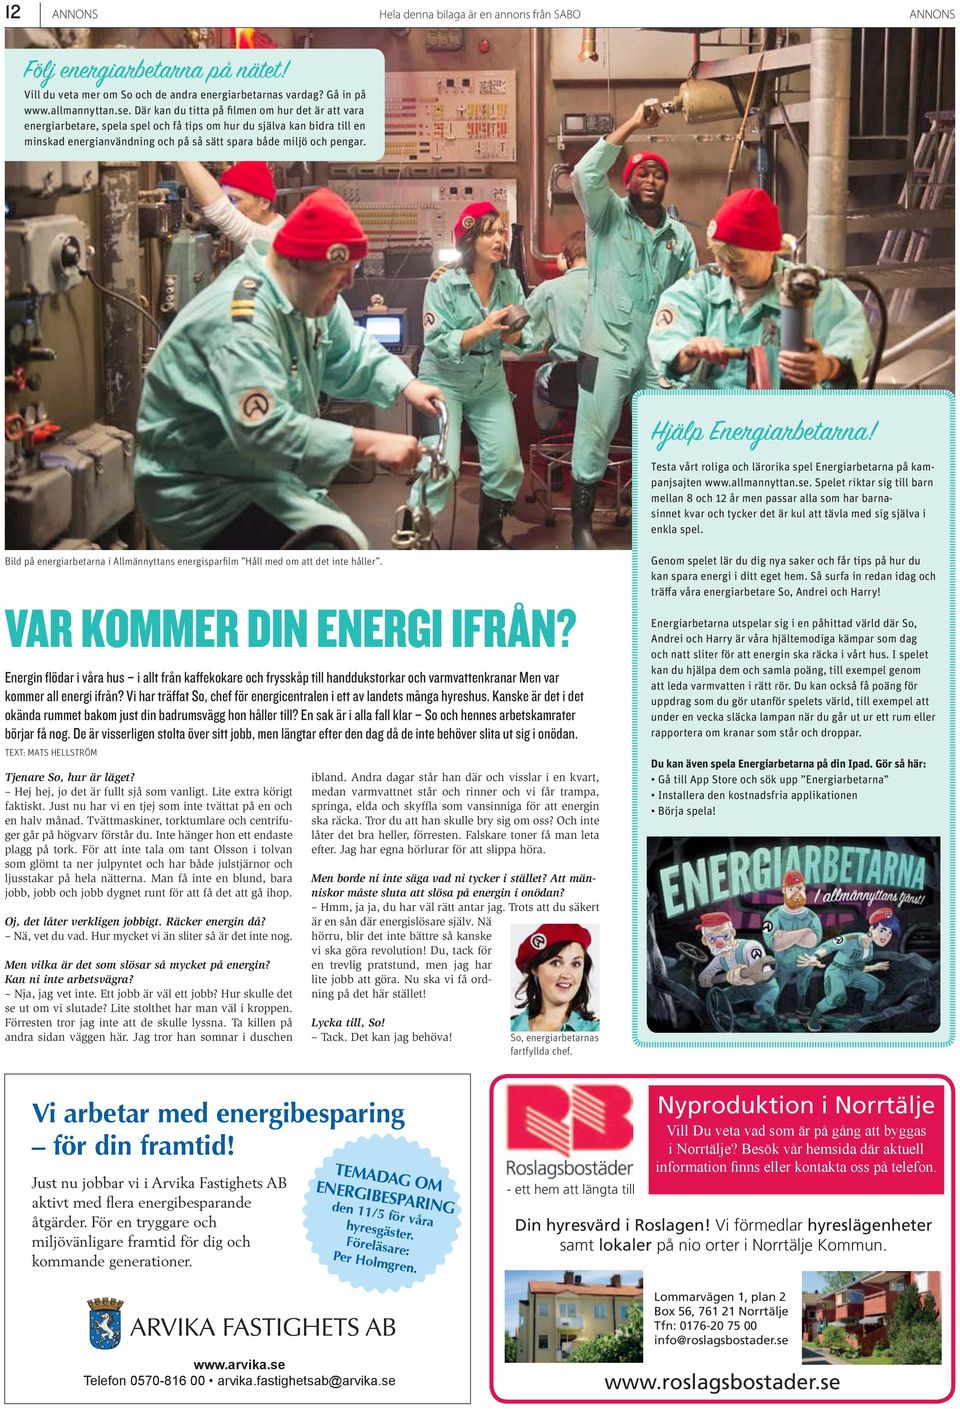 Hjälp Energiarbetarna! Testa vårt roliga och lärorika spel Energiarbetarna på kampanjsajten www.allmannyttan.se.